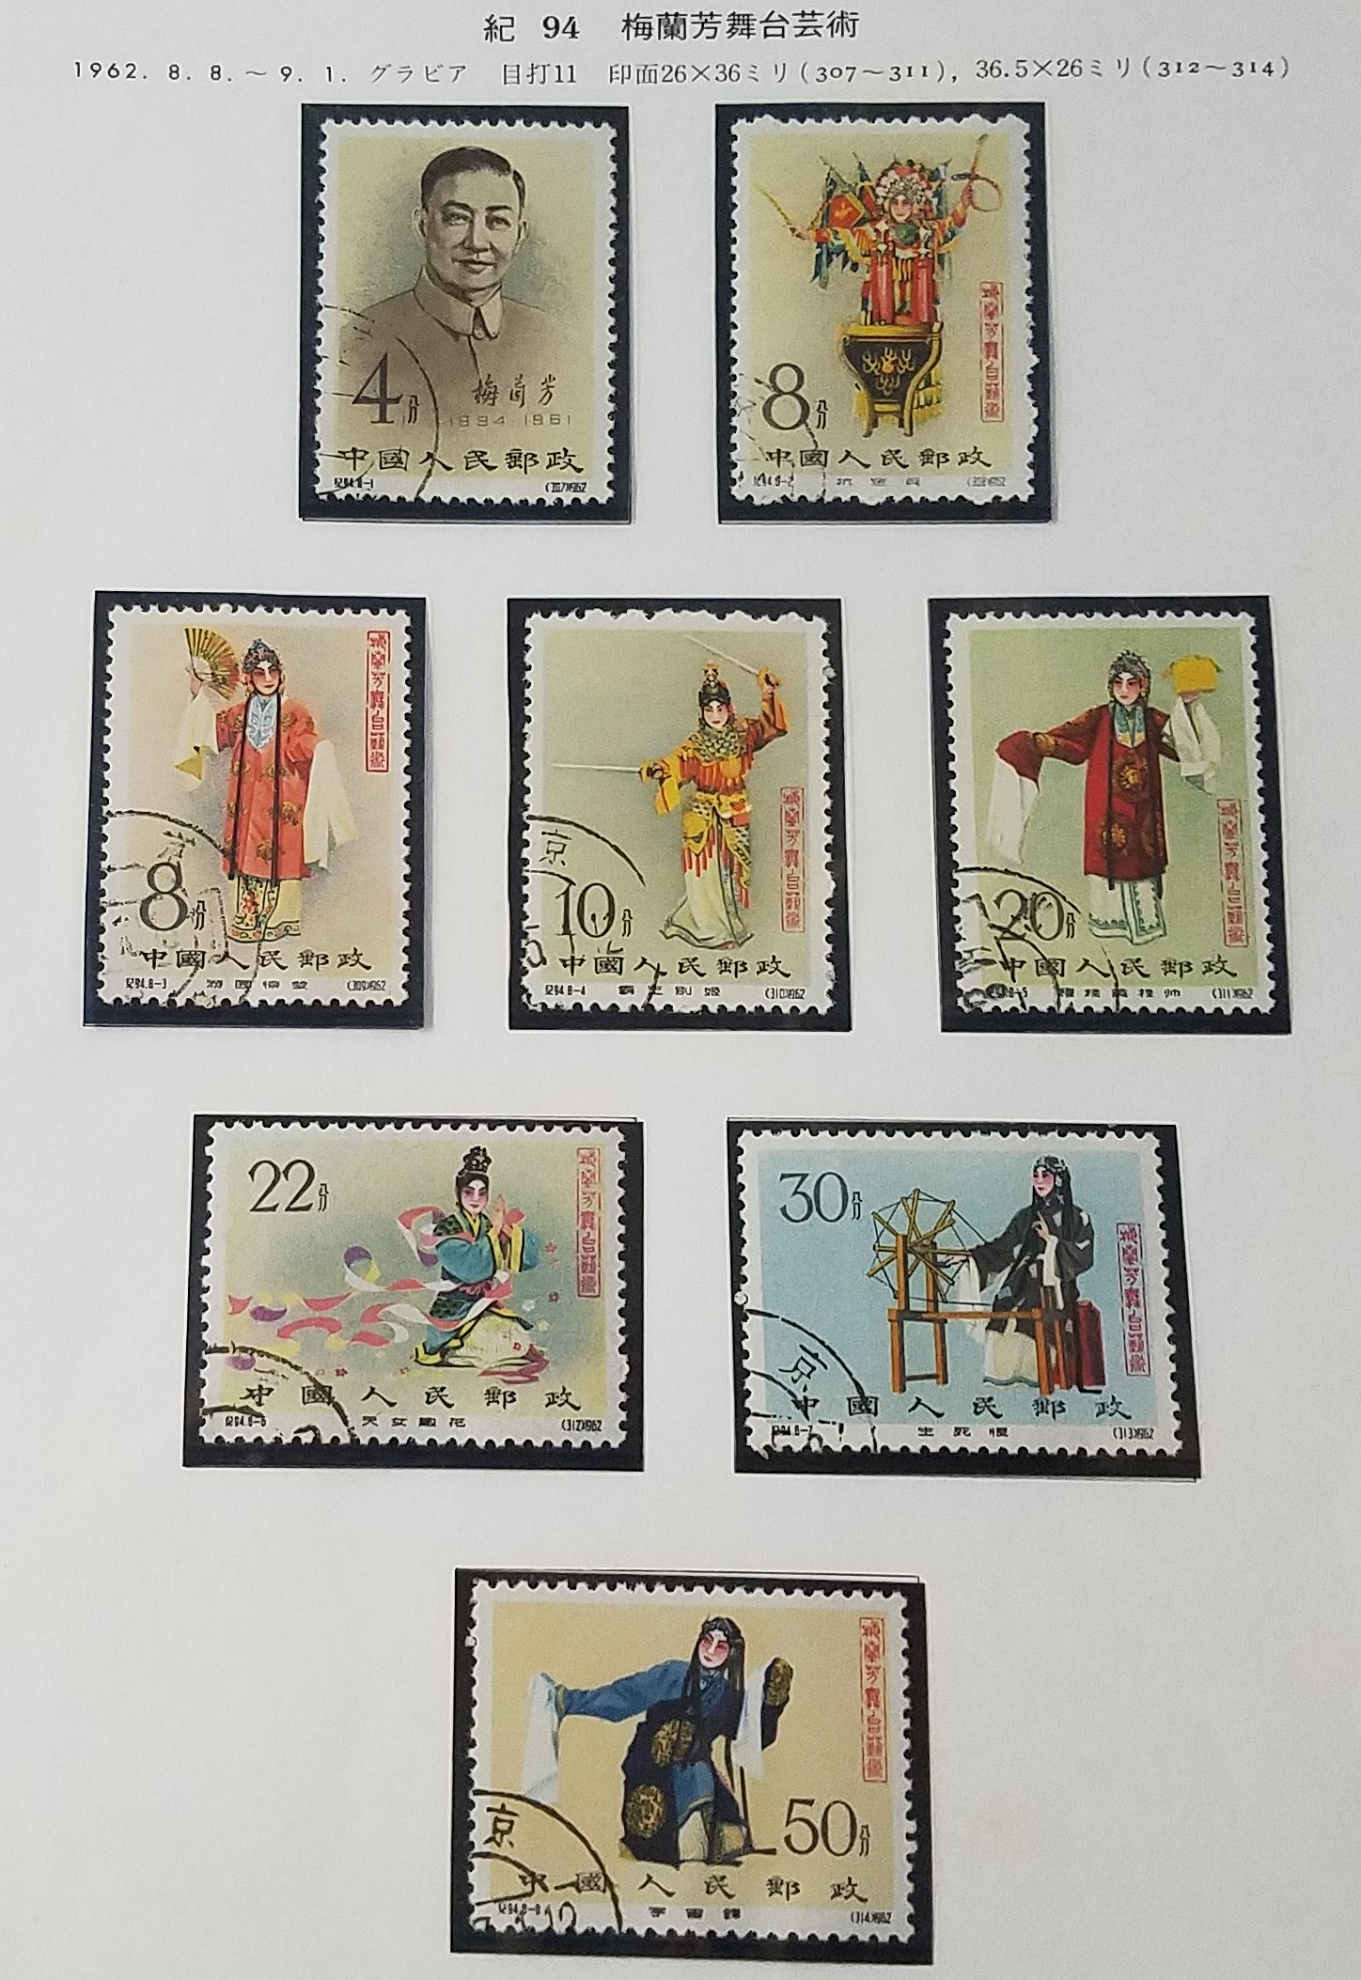 ヴィンテージ 海外切手 世界の切手 使用済切手 切手コレクション ...